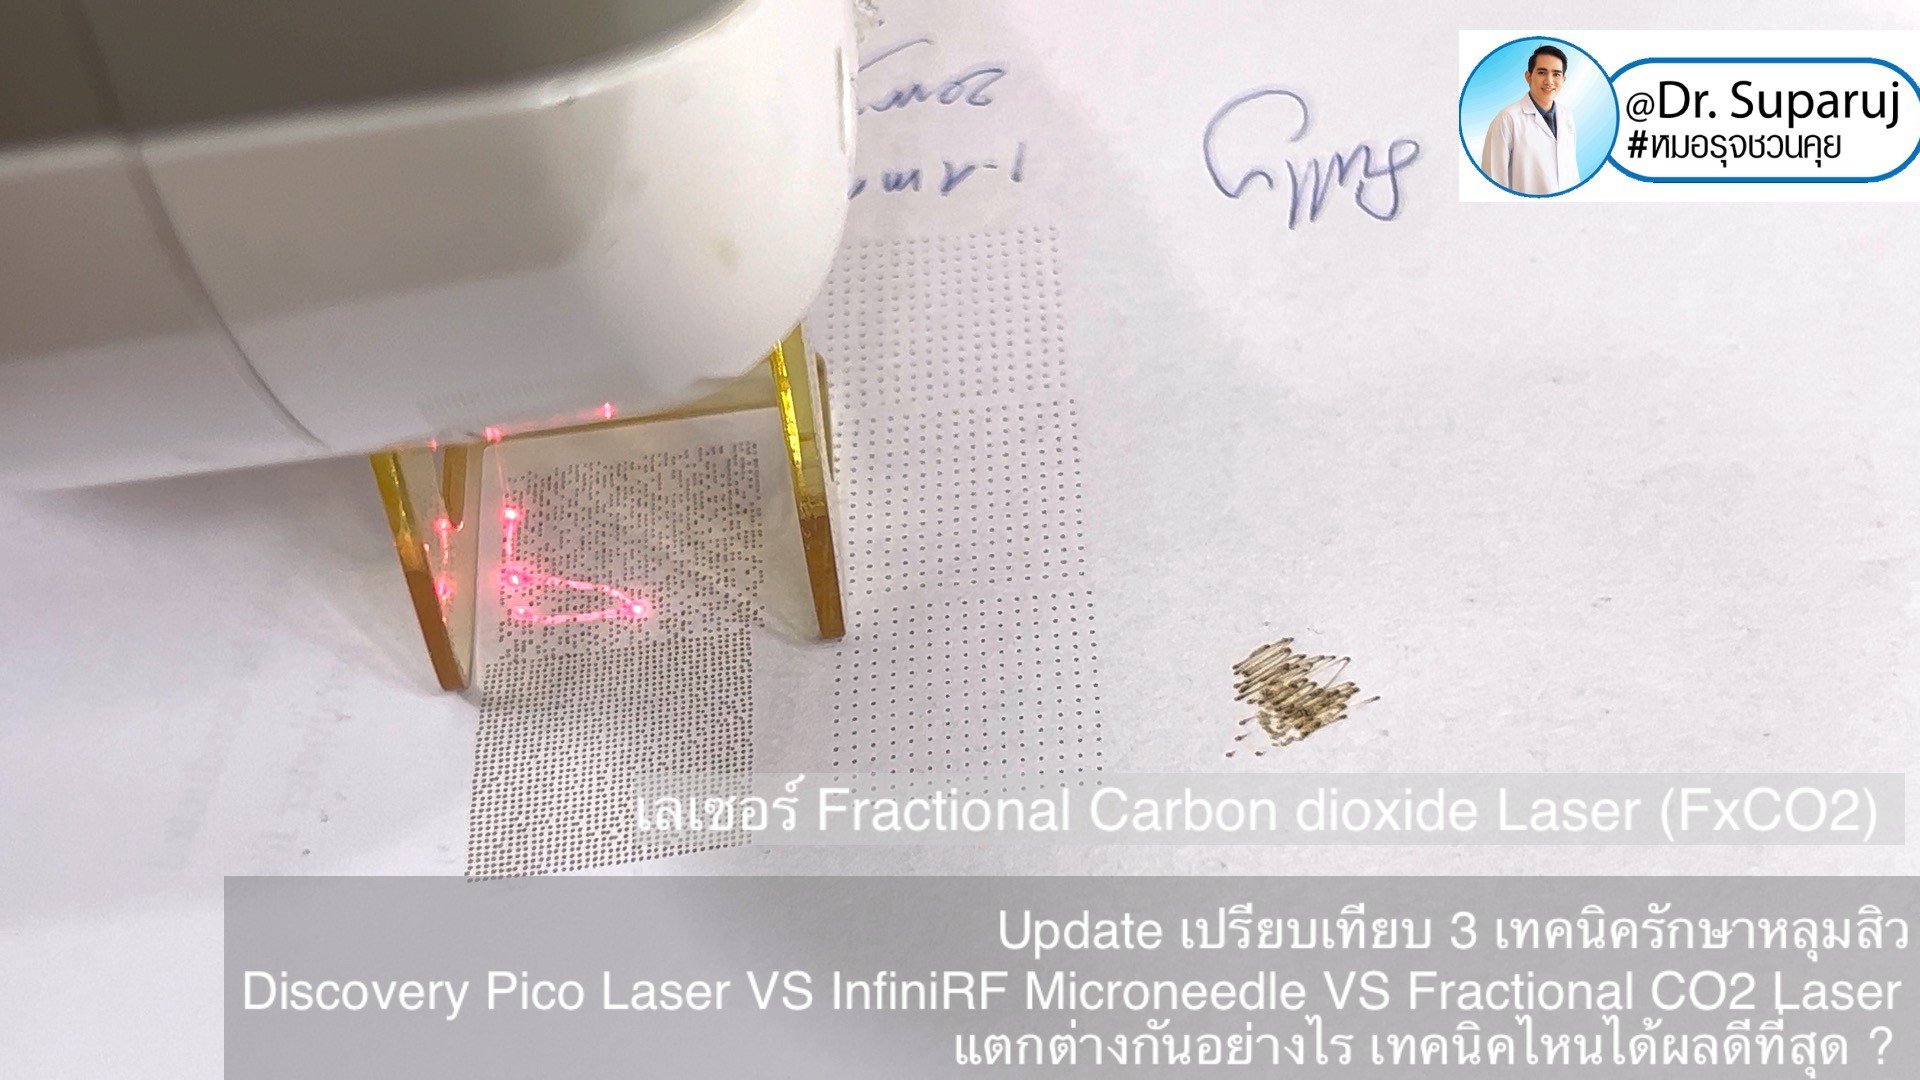 ผลการรักษาหลุมสิวด้วย Picosecond Laser VS InfiniRF Microneedle แตกต่างกันอย่างไร อะไรมีประสิทธิภาพดีกว่า ?